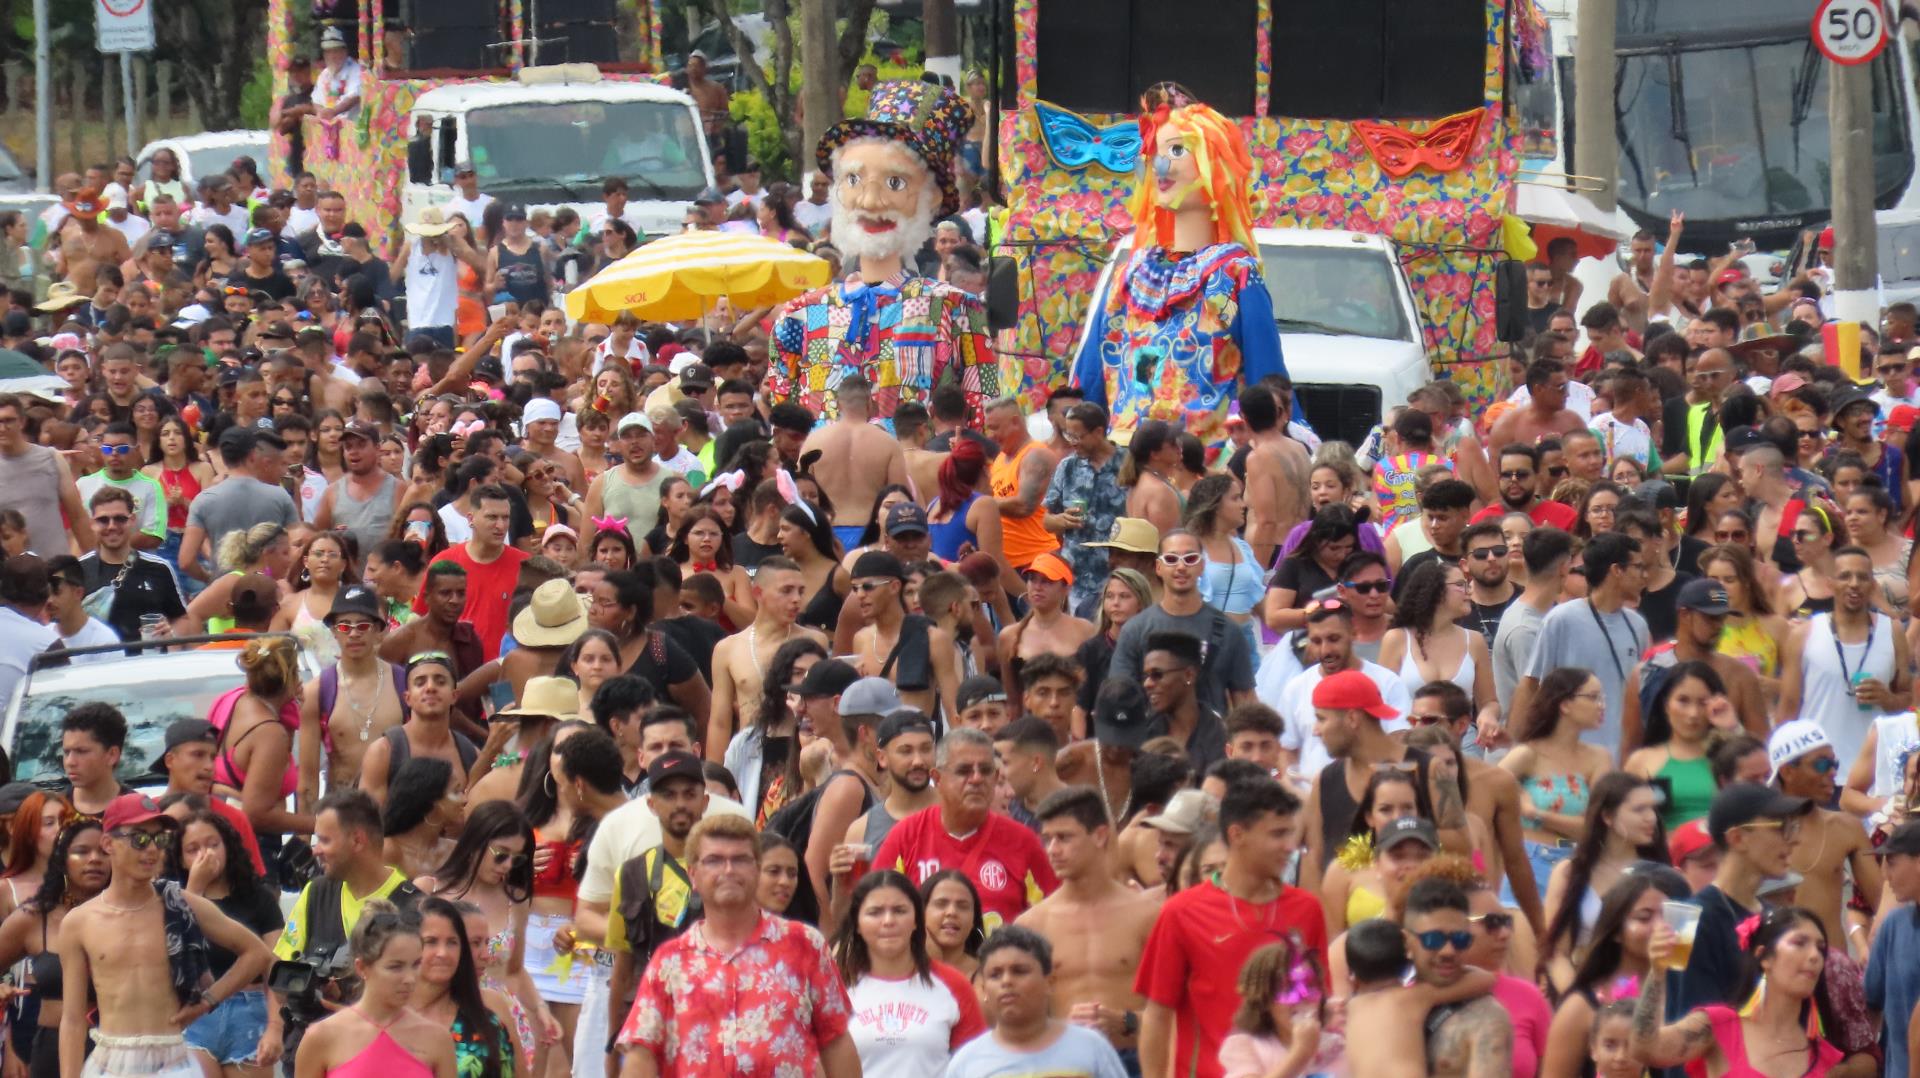 G1 - Comunidade Hare Krishna faz retiro de carnaval em Pinda, SP